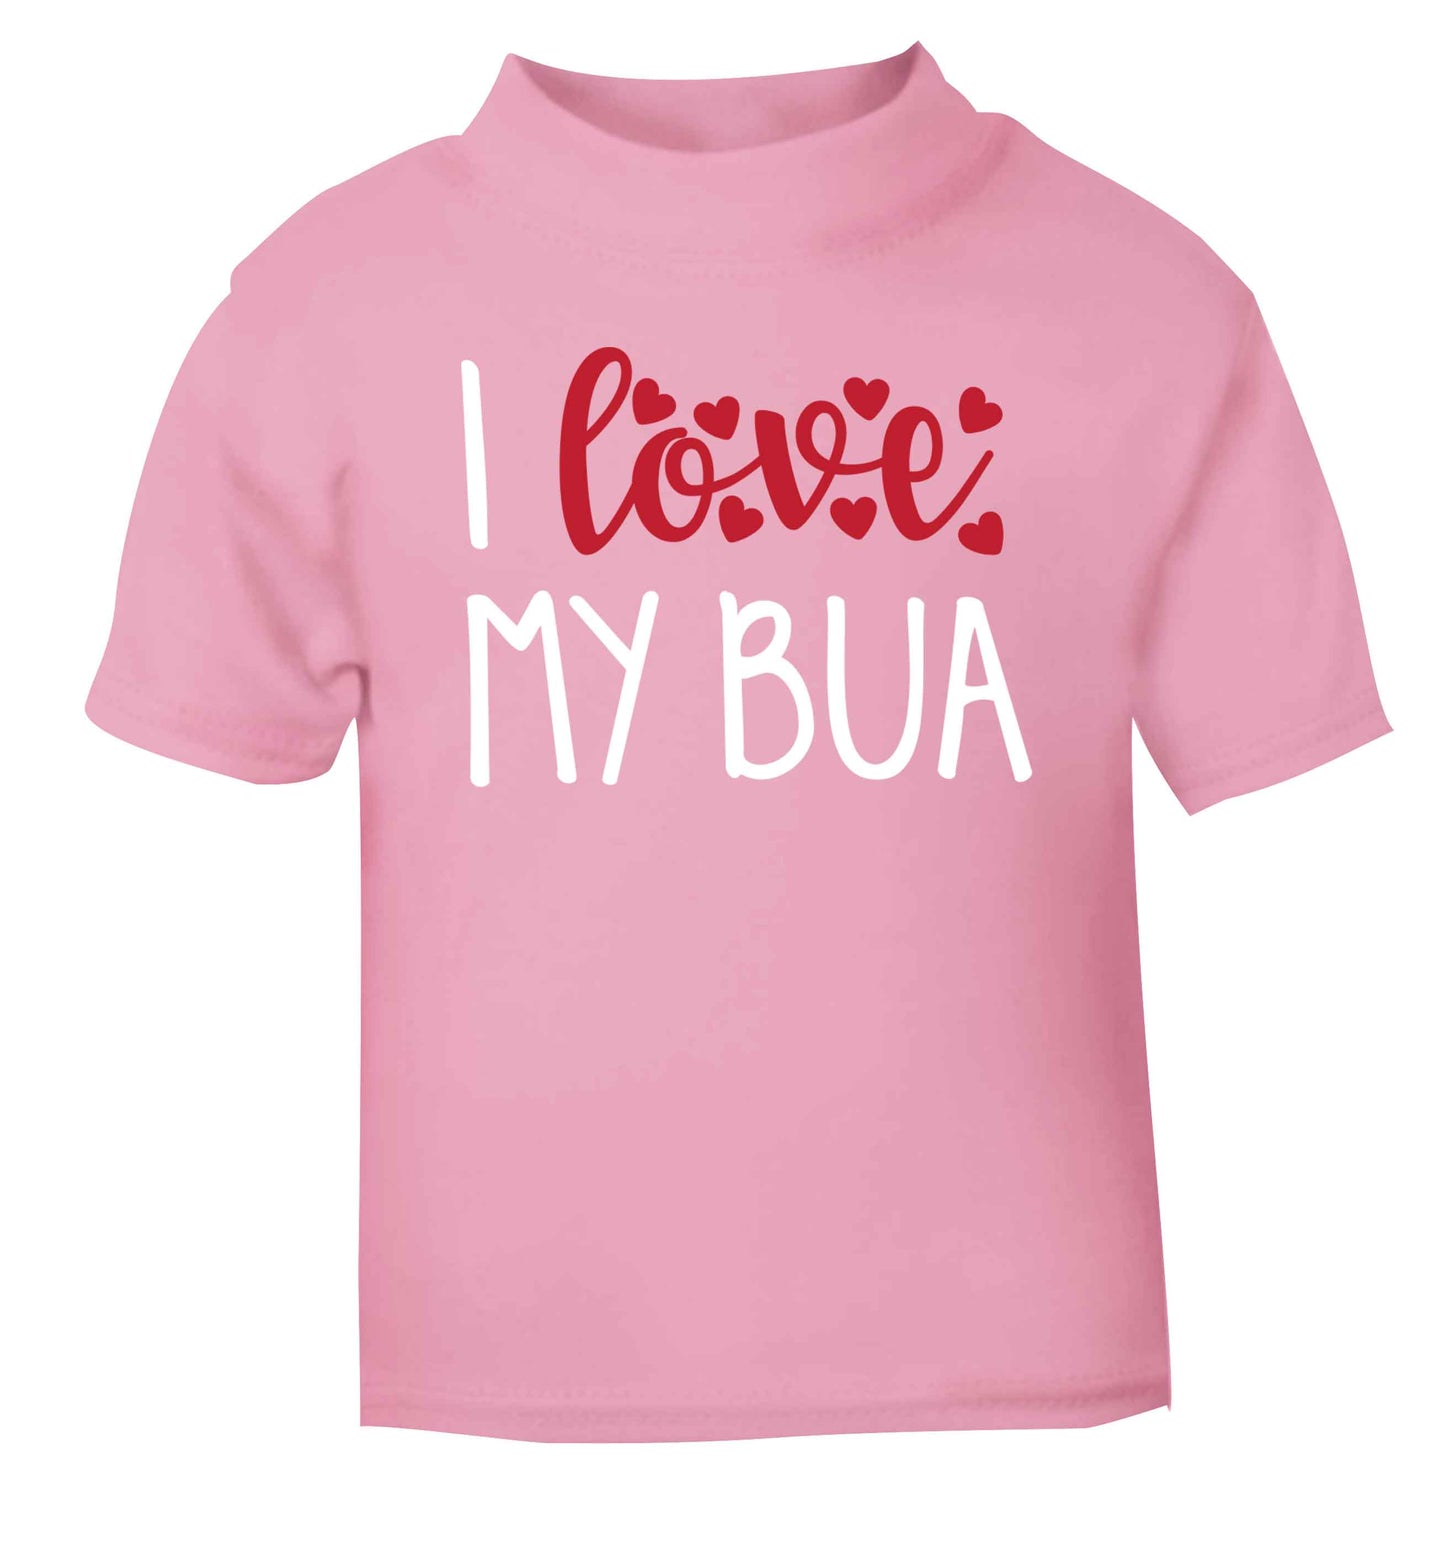 I love my bua light pink Baby Toddler Tshirt 2 Years